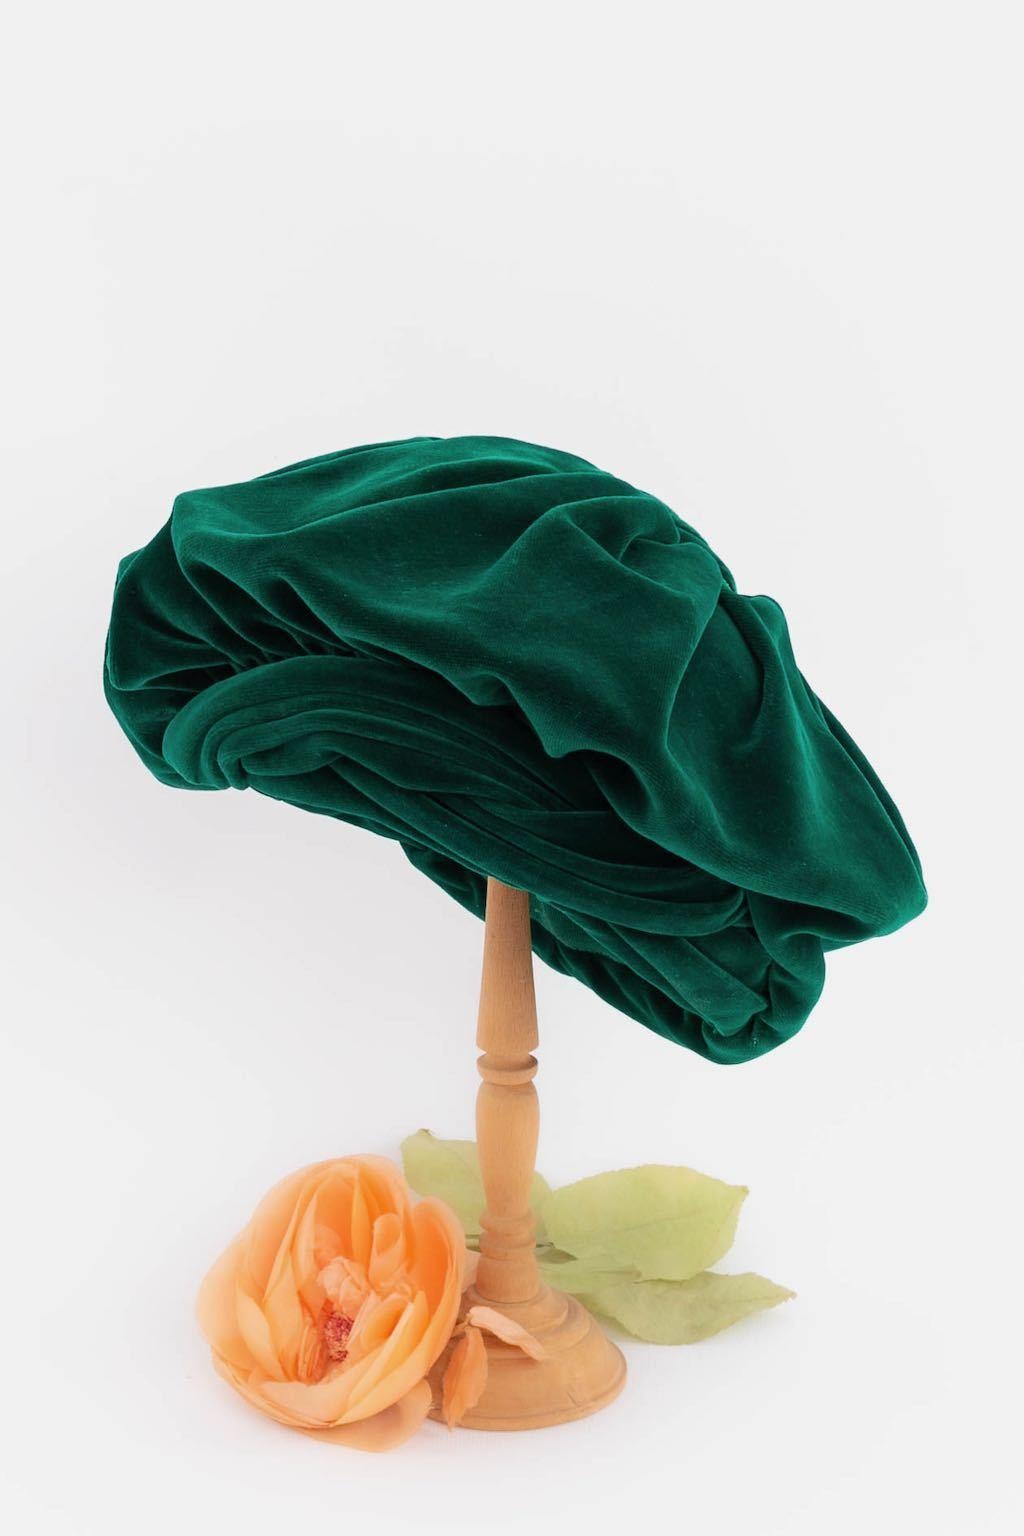 Anonym - Smaragdgrüne Baskenmütze aus Seidensamt.

Zusätzliche Informationen:
Zustand: Sehr guter Zustand
Abmessungen: Umfang: 52 cm (20.47